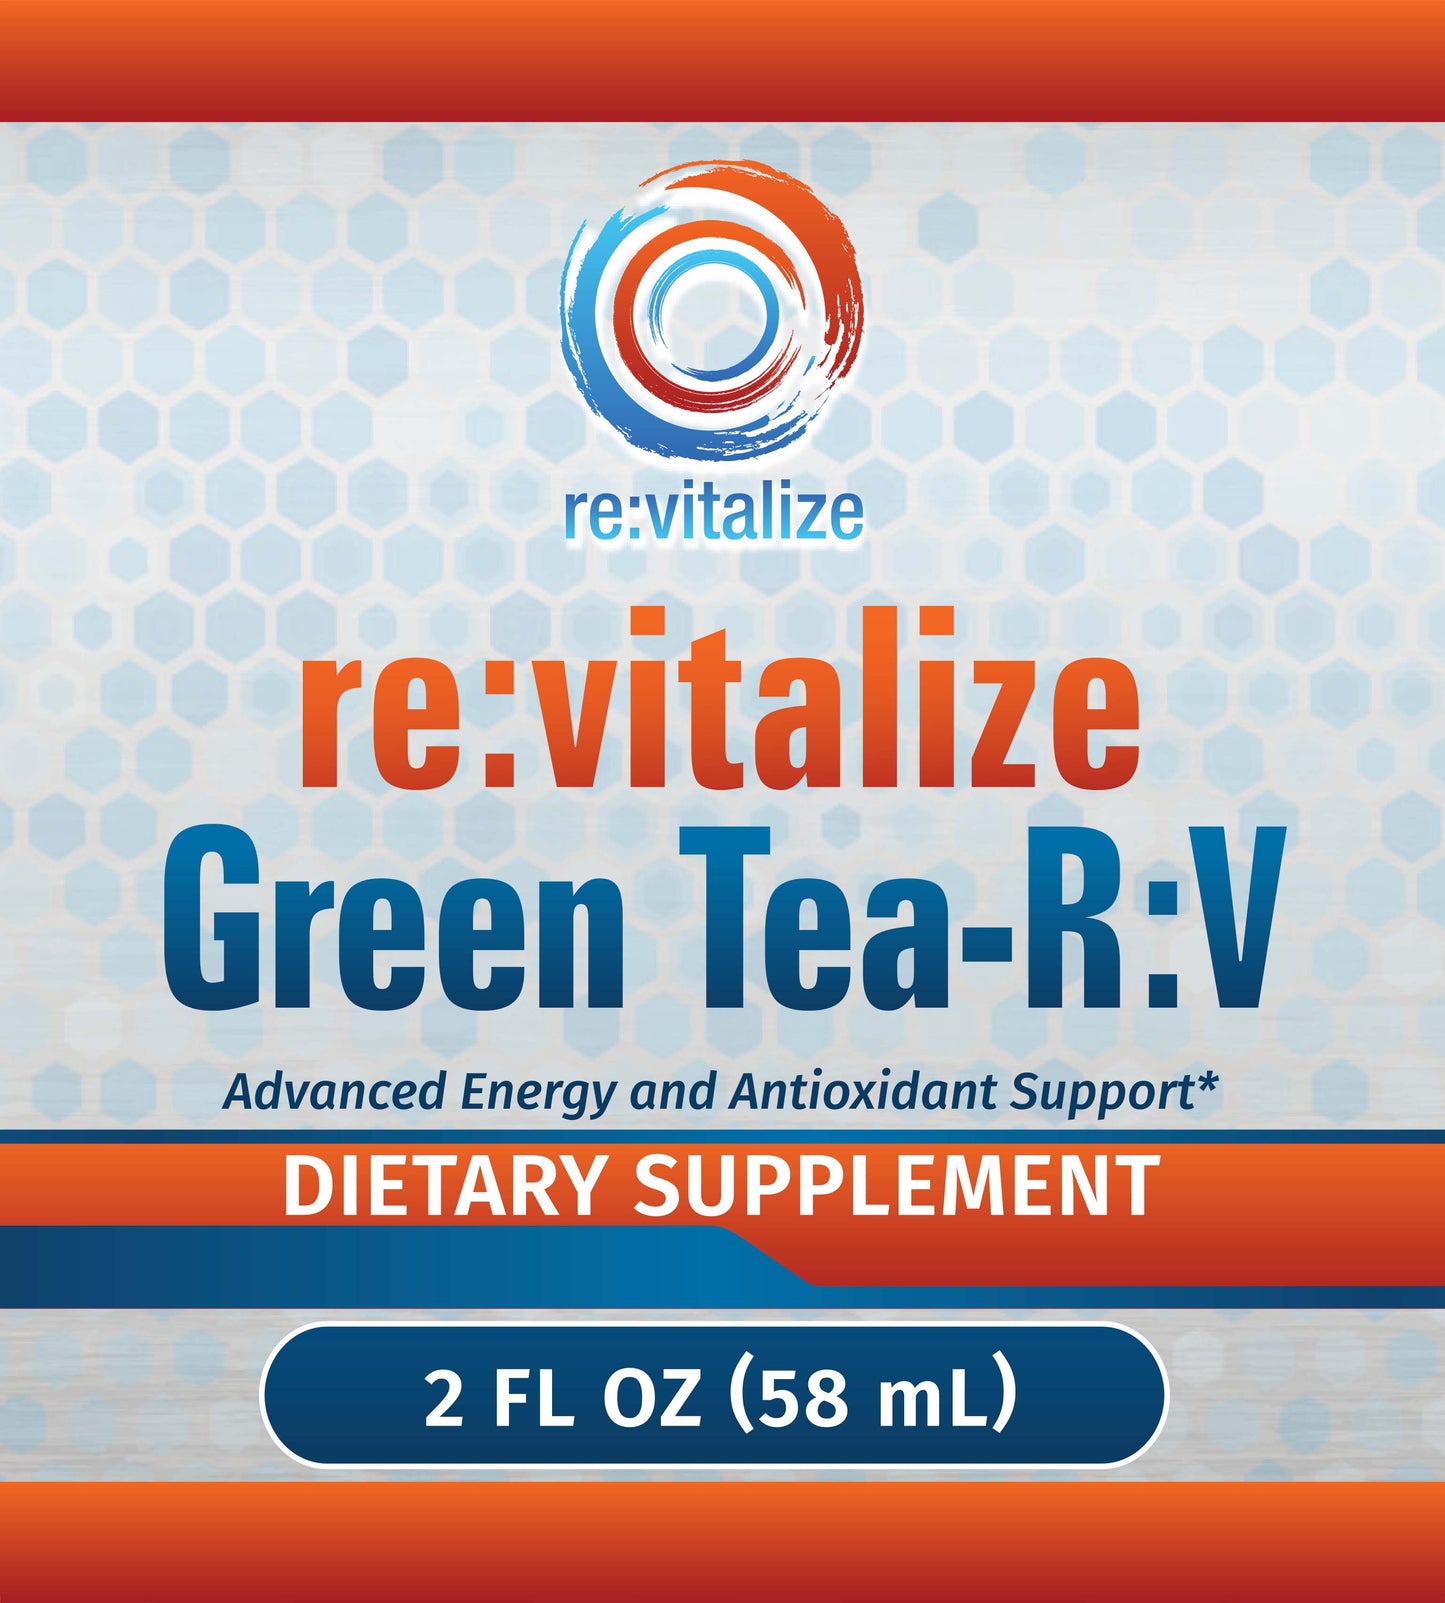 Green Tea-R:V